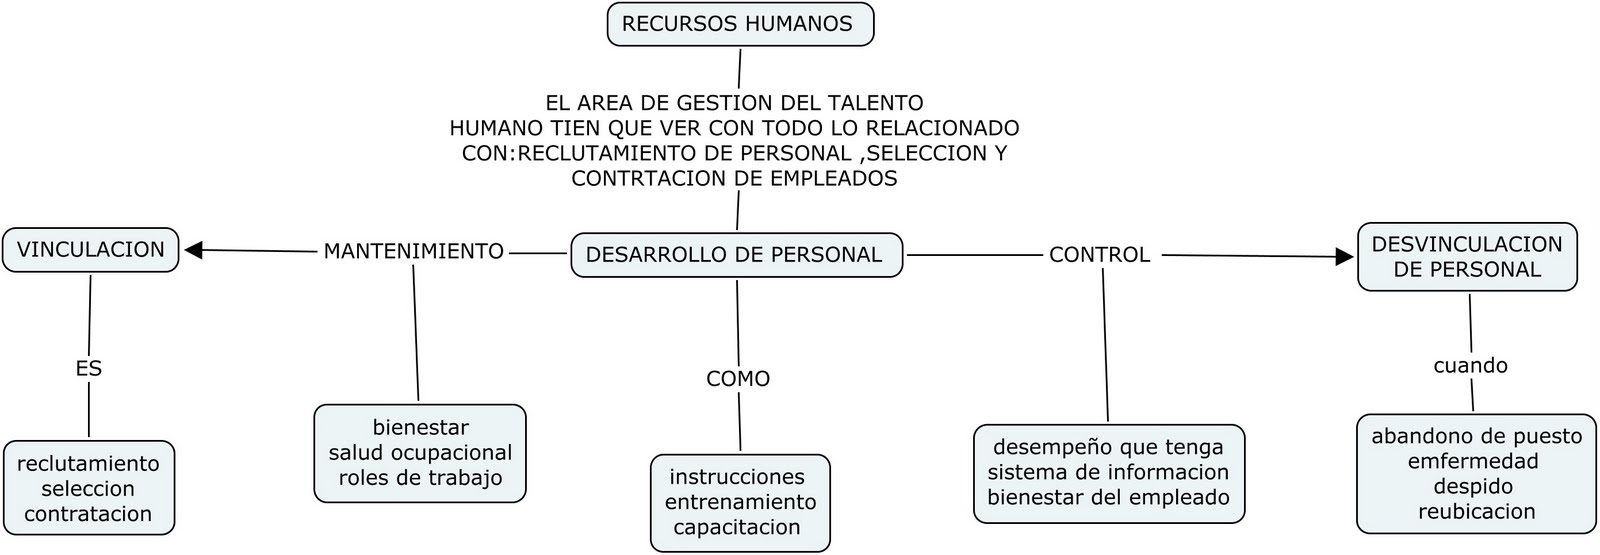 Miguel Cutiva Mapa Conceptual Recursos Humanos